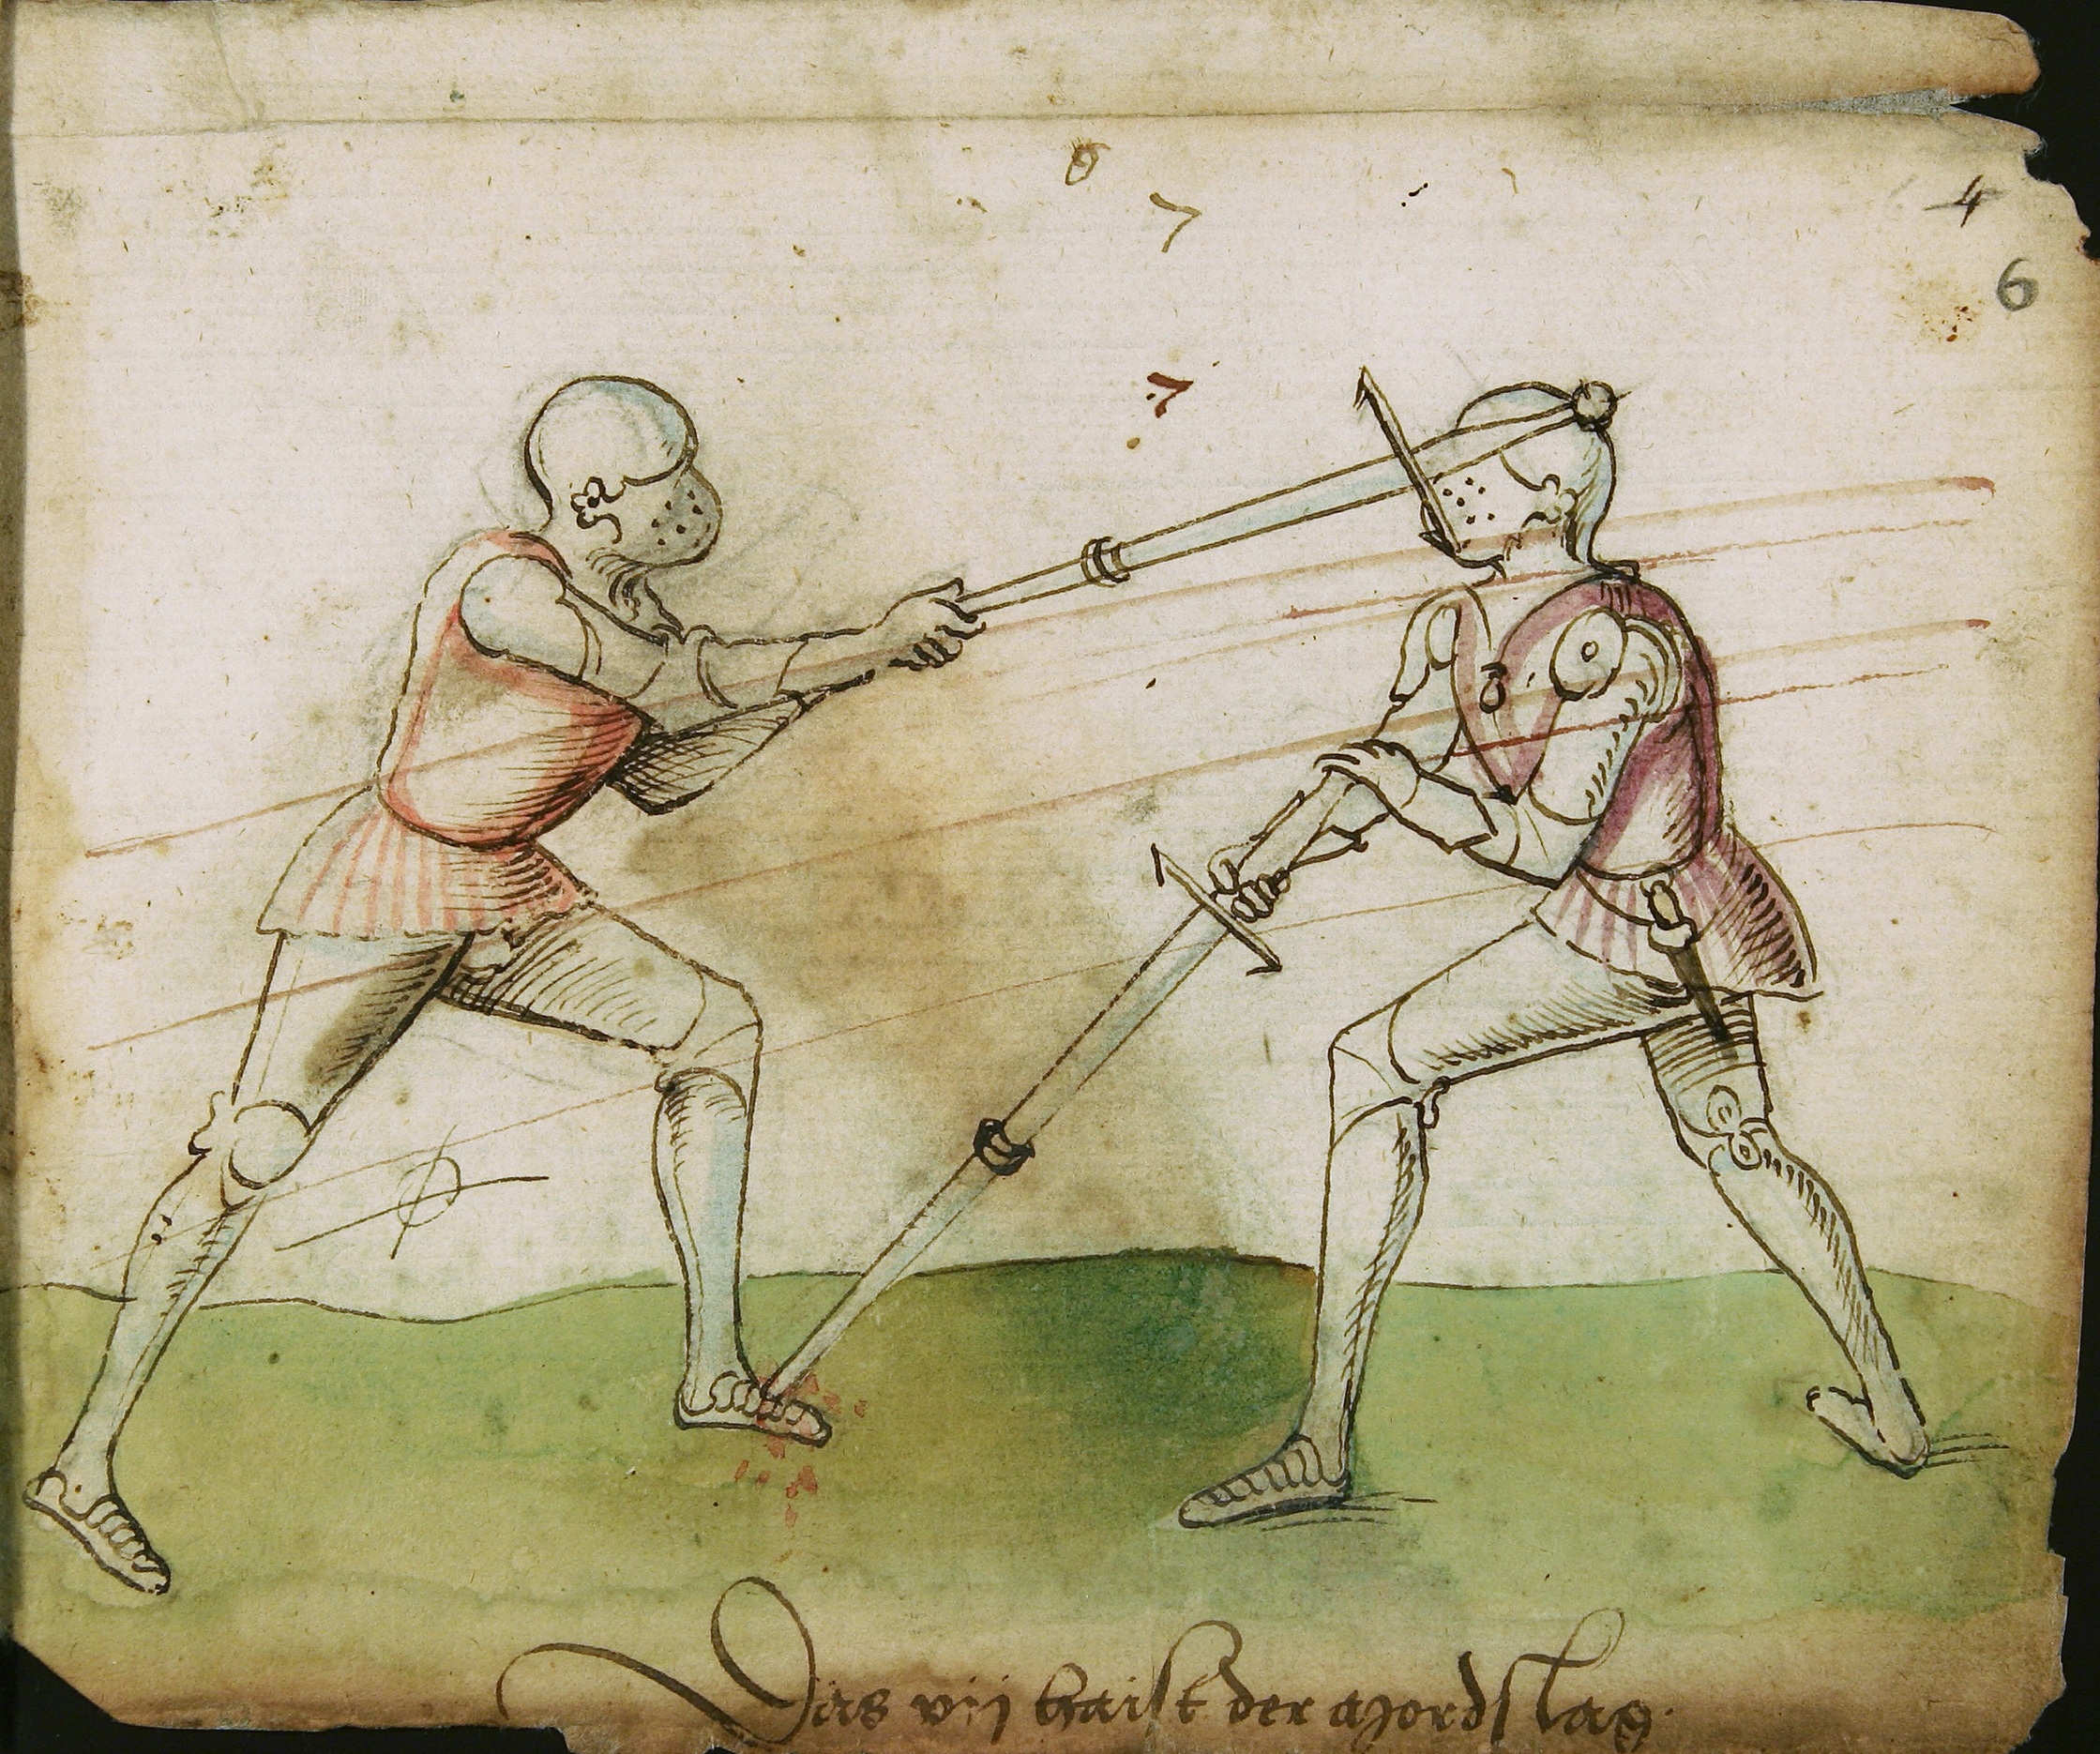 Итальянская Рапира фехтование средневековое